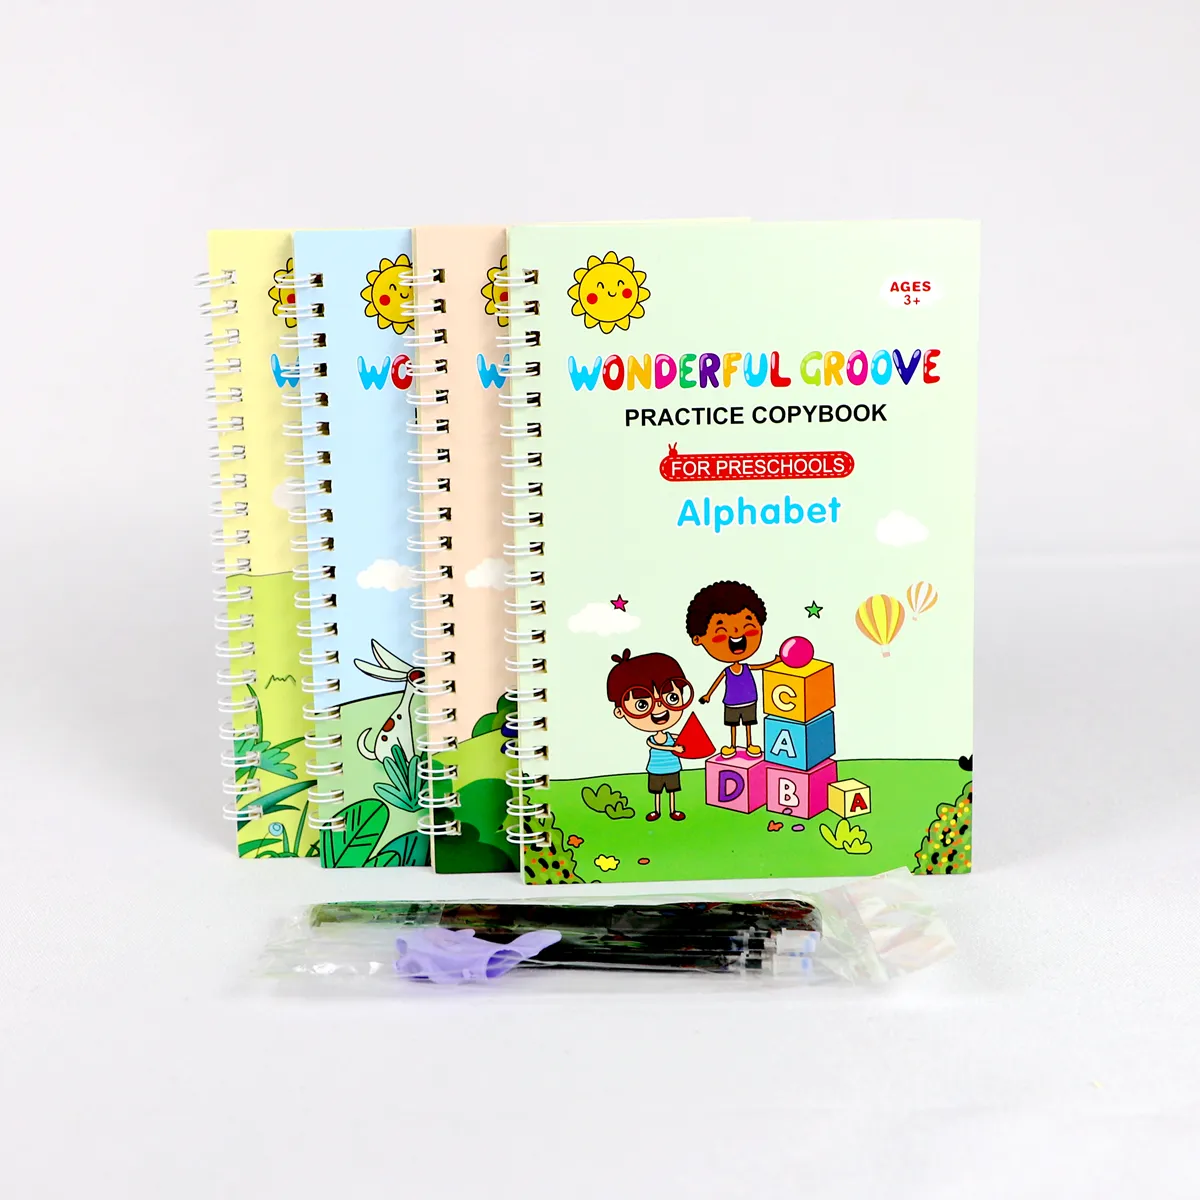 $1/Set Wieder verwendbares Handschrift-Kalligraphie buch 4-teiliges Set Magic Practice Copybook für Kinder Kinderbuch druck